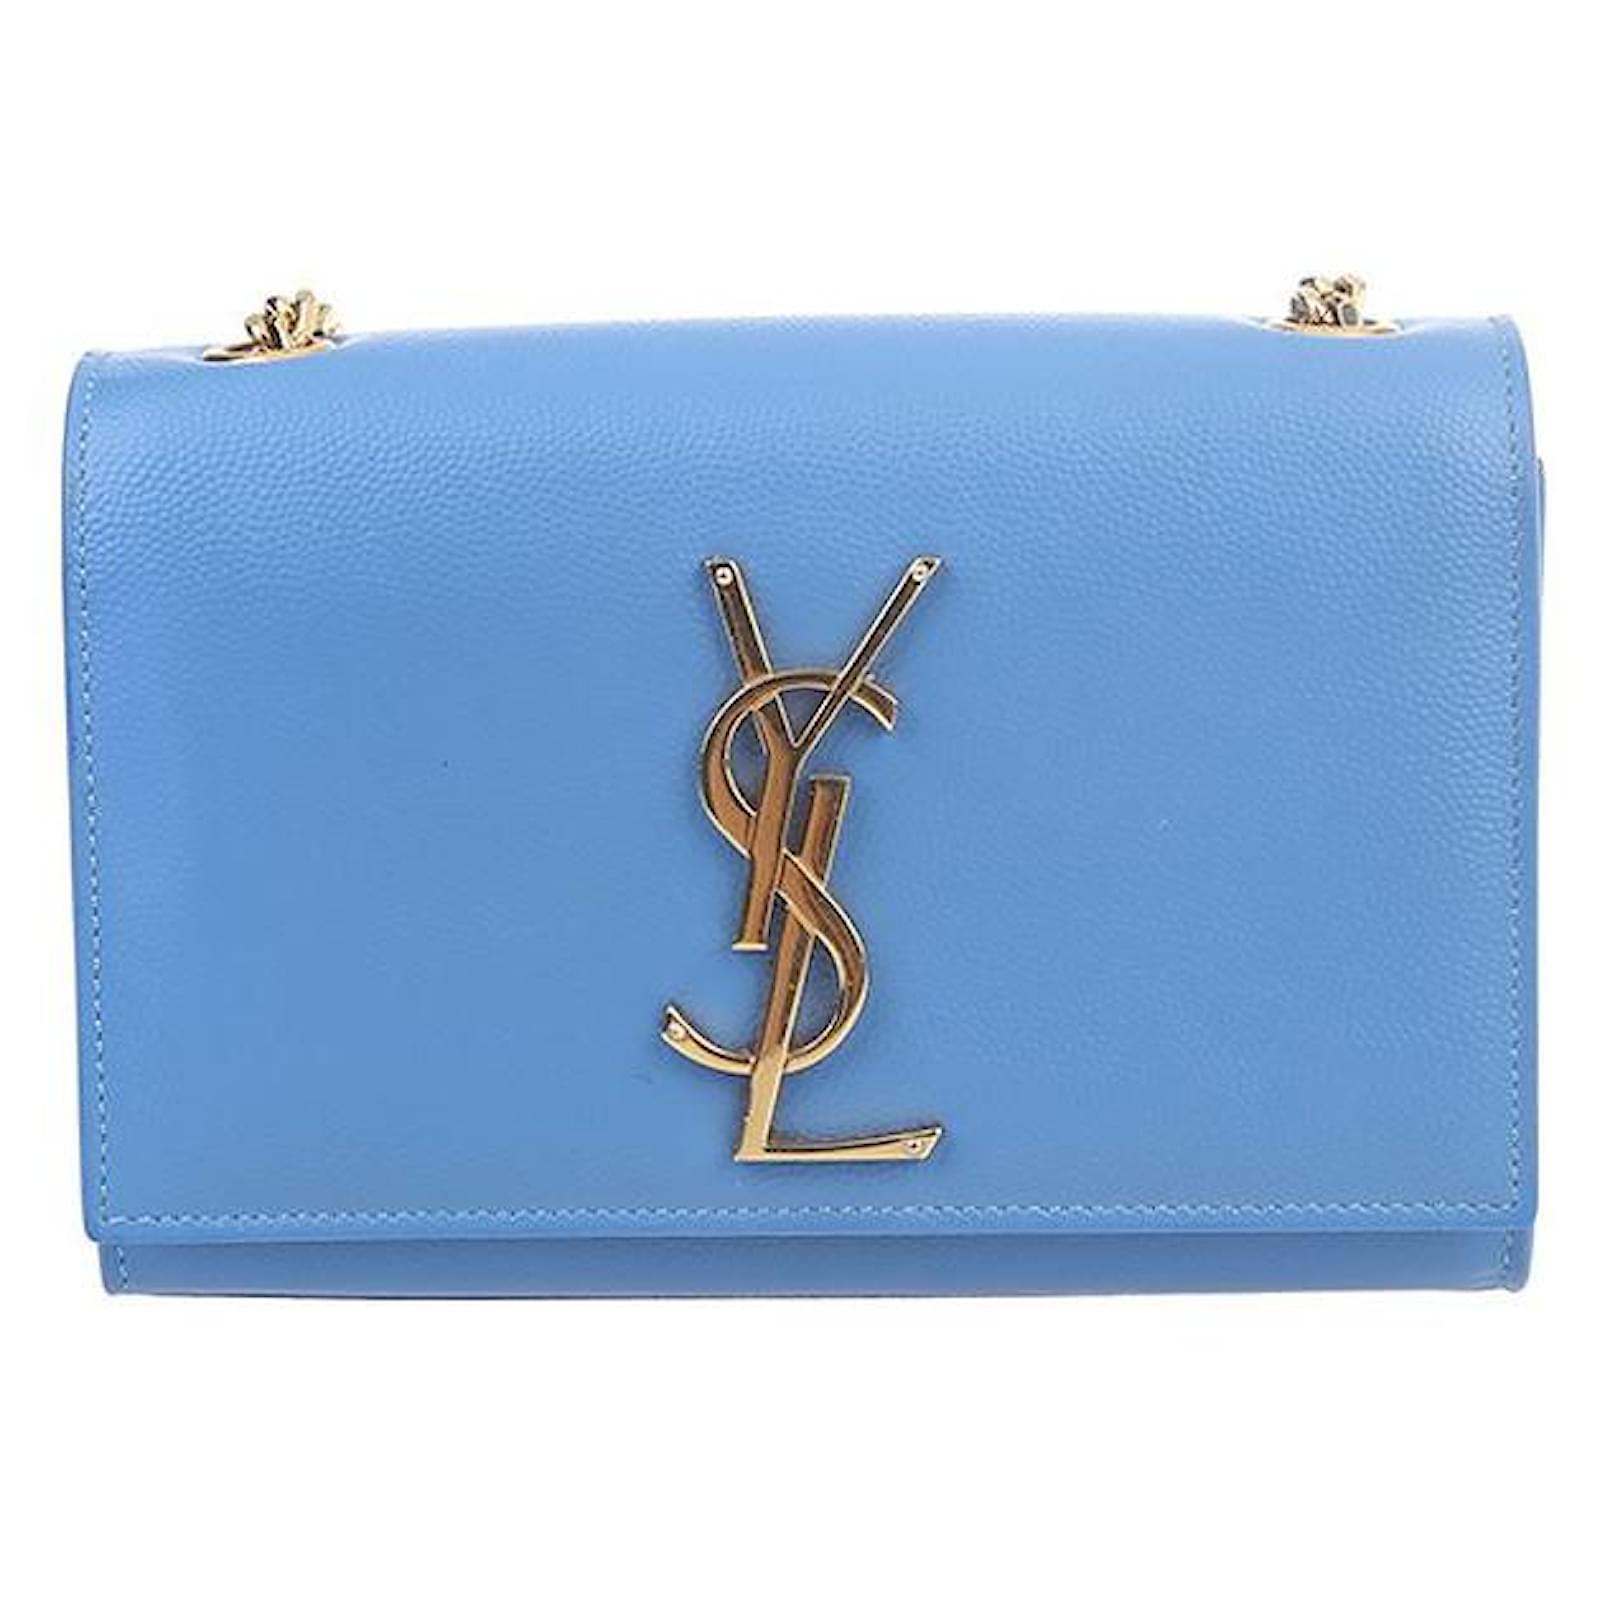 Yves Saint Laurent Kate Leather Shoulder Bag